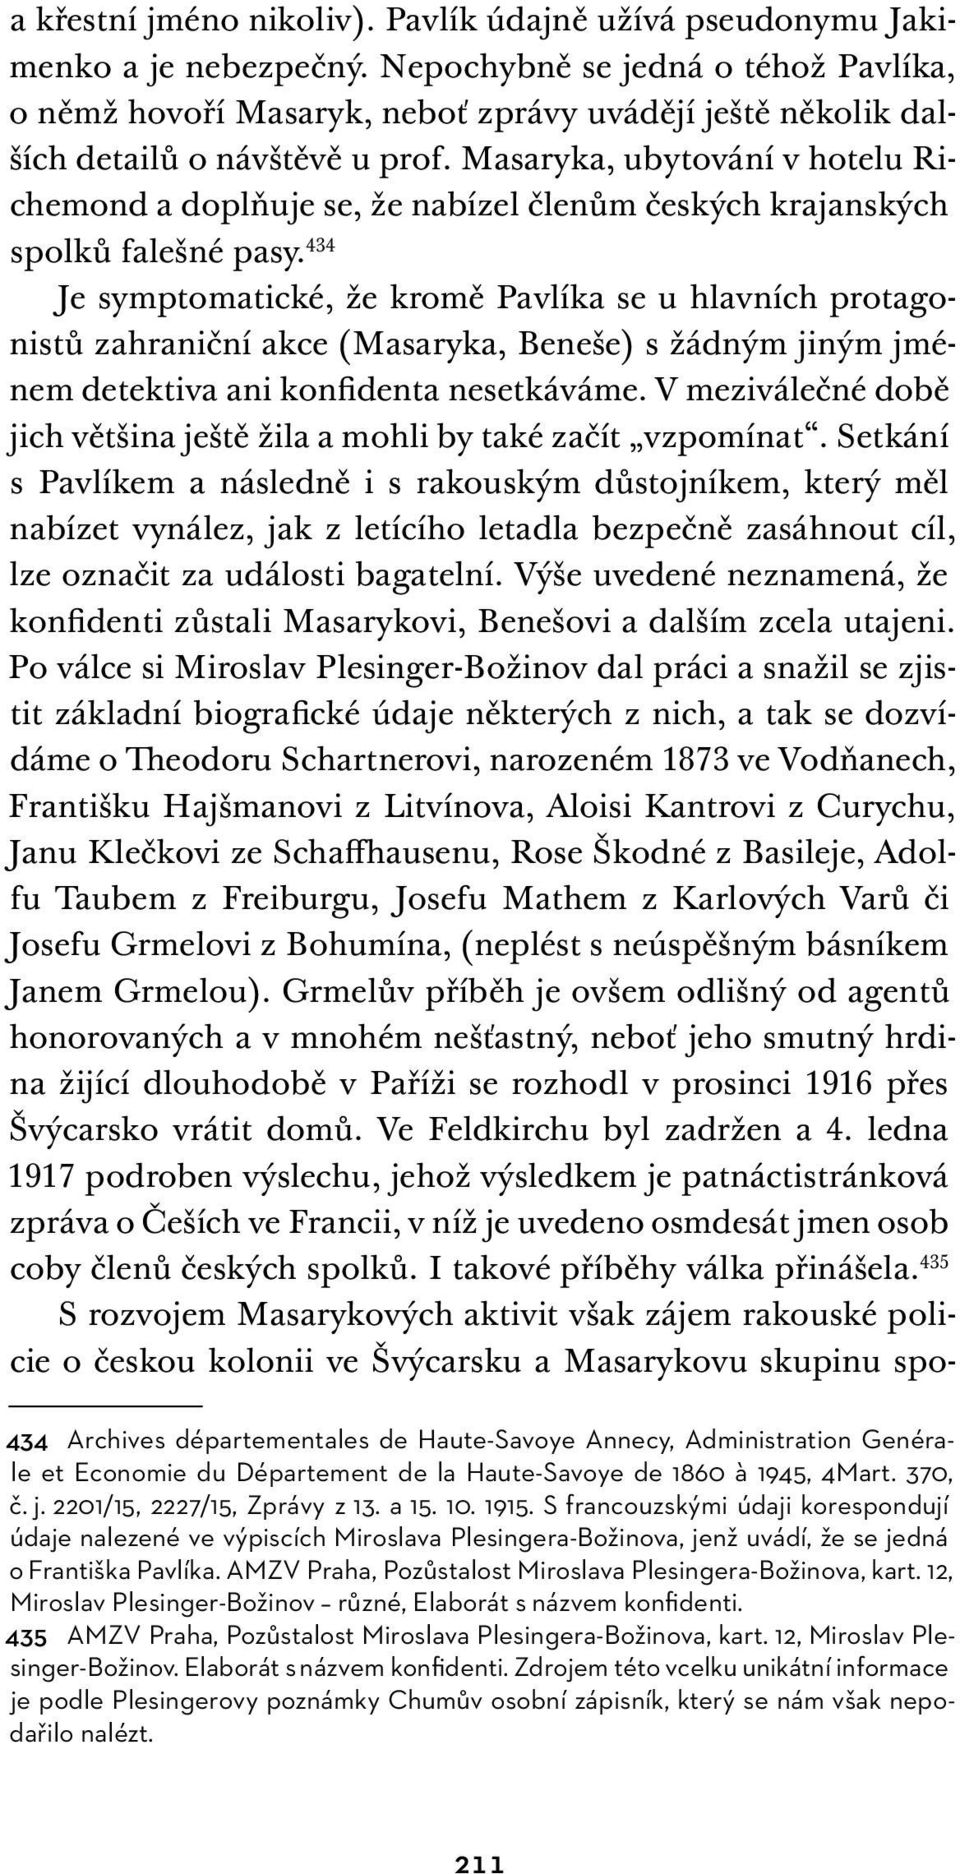 Masaryka, ubytování v hotelu Richemond a doplňuje se, že nabízel členům českých krajanských spolků falešné pasy.